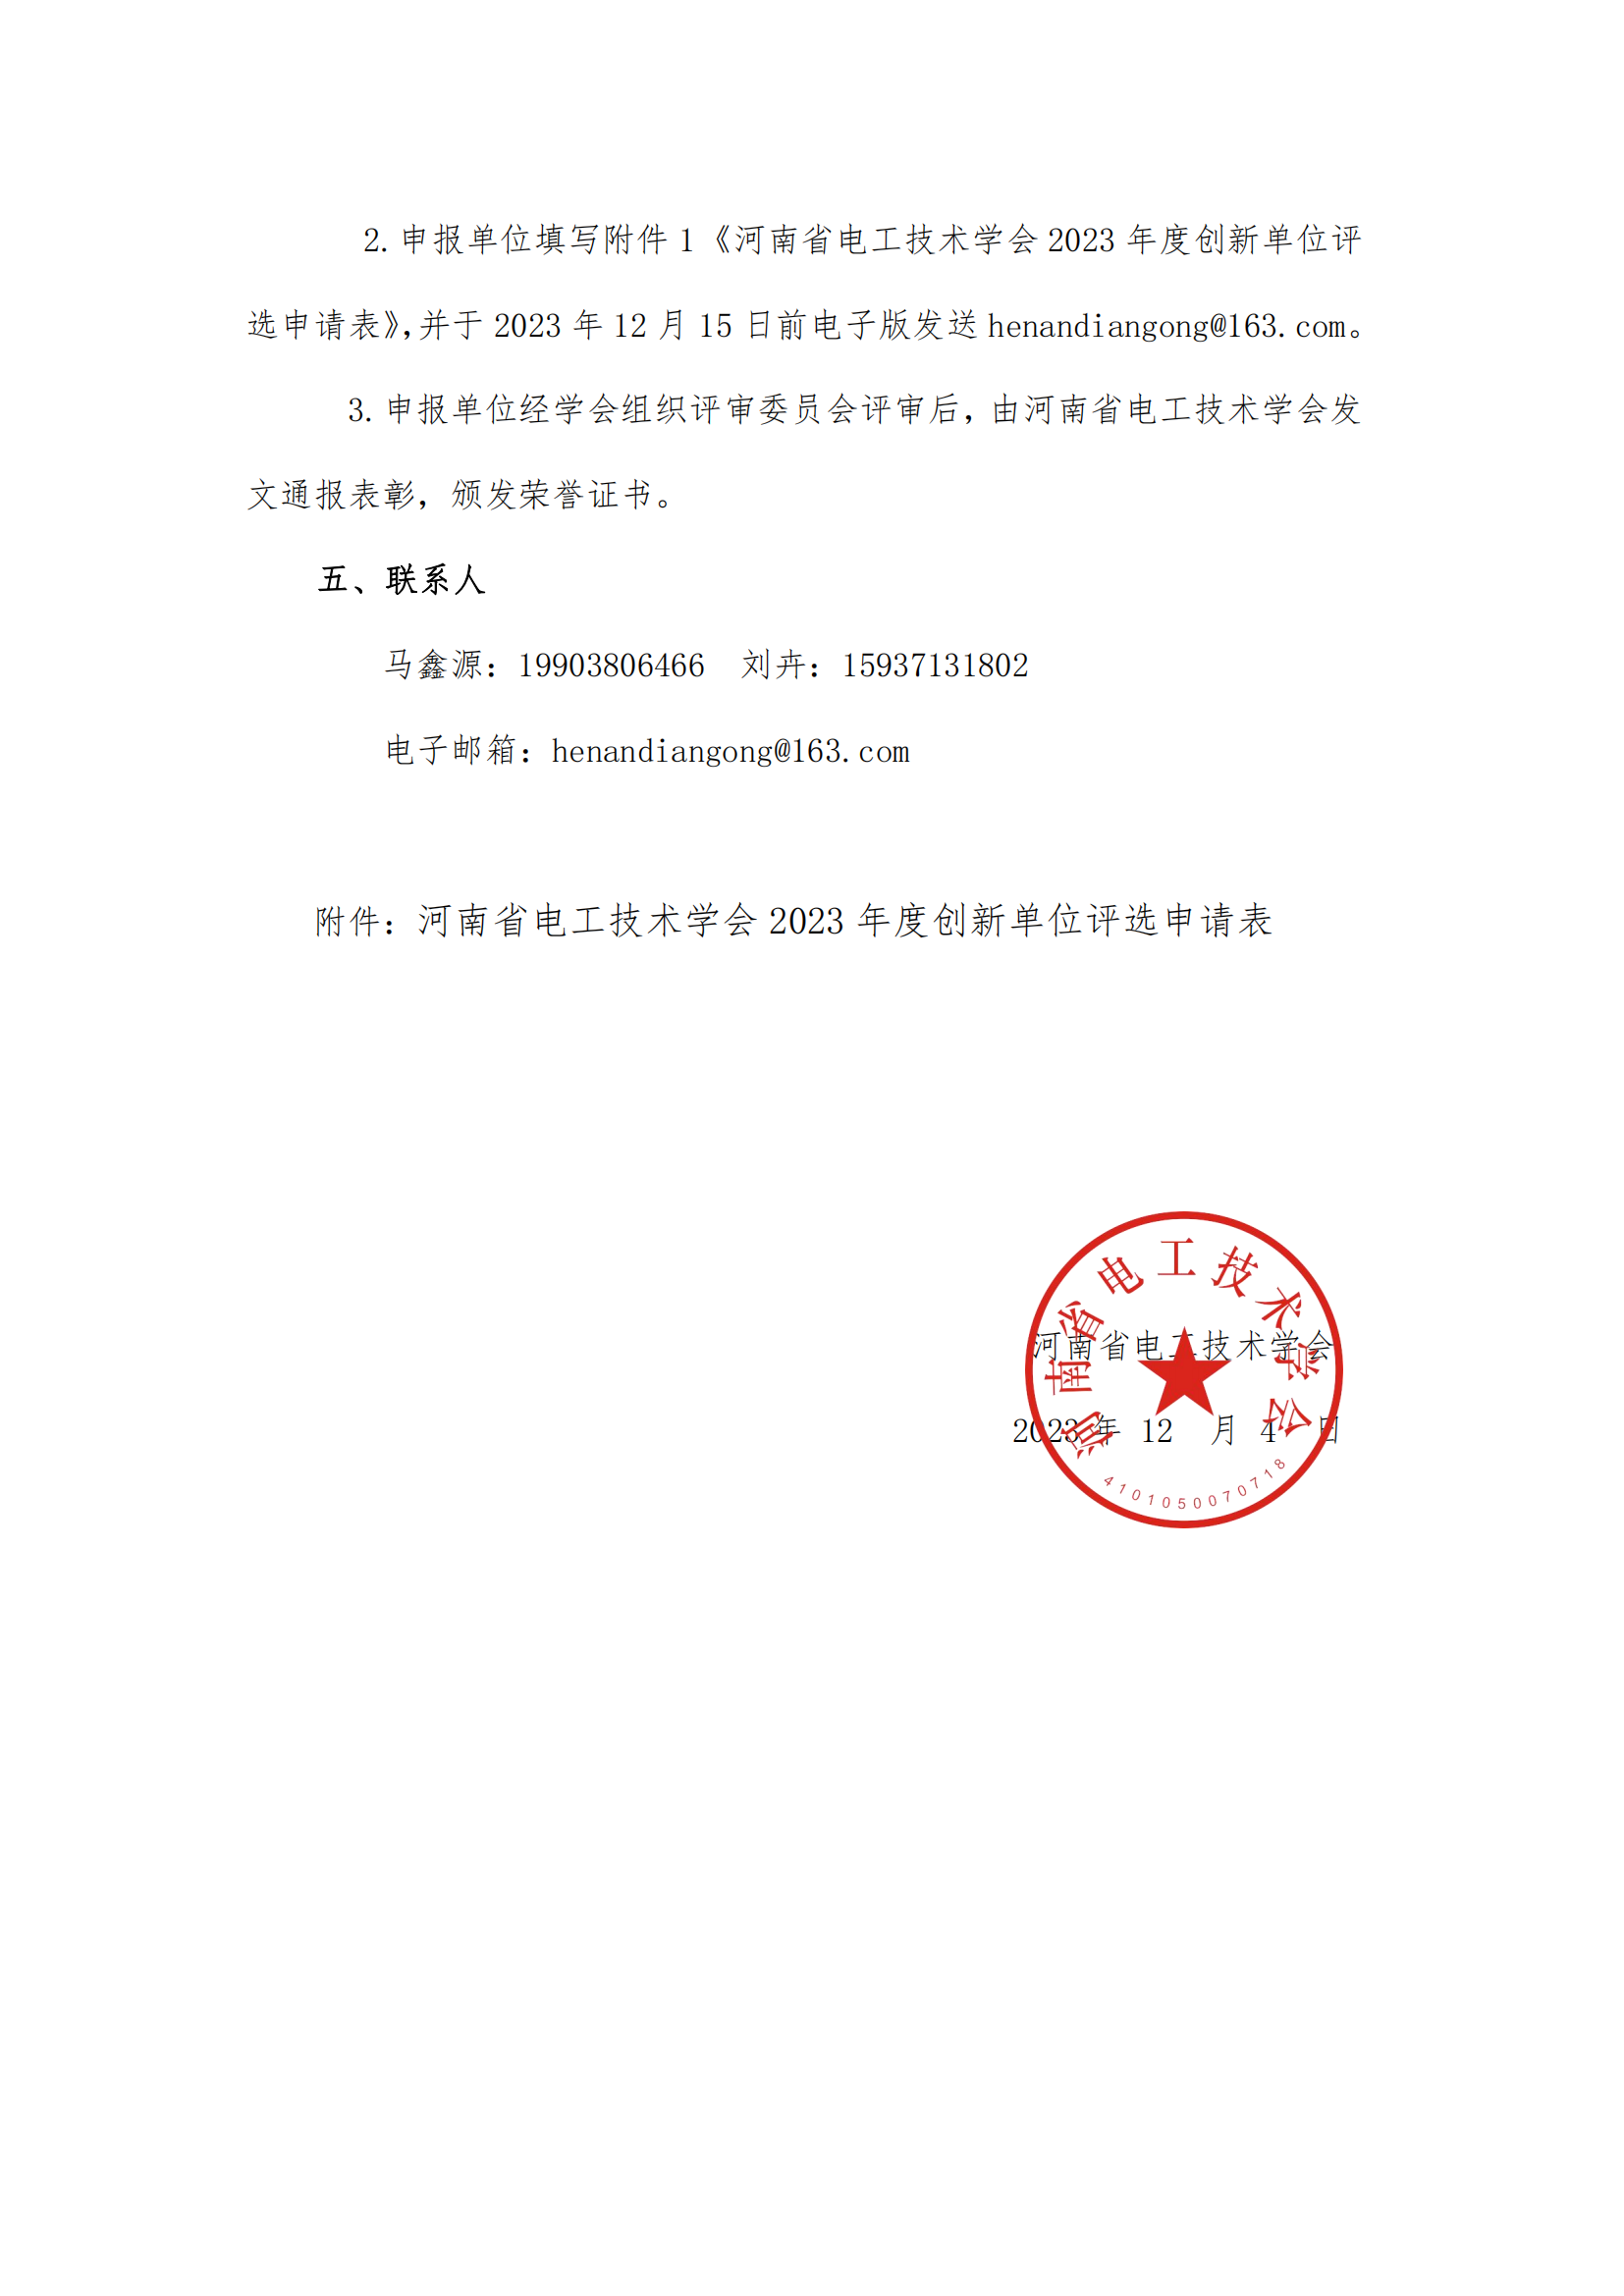 关于河南省电工技术学会2023年度创新单位评选的通知(1)_01.png